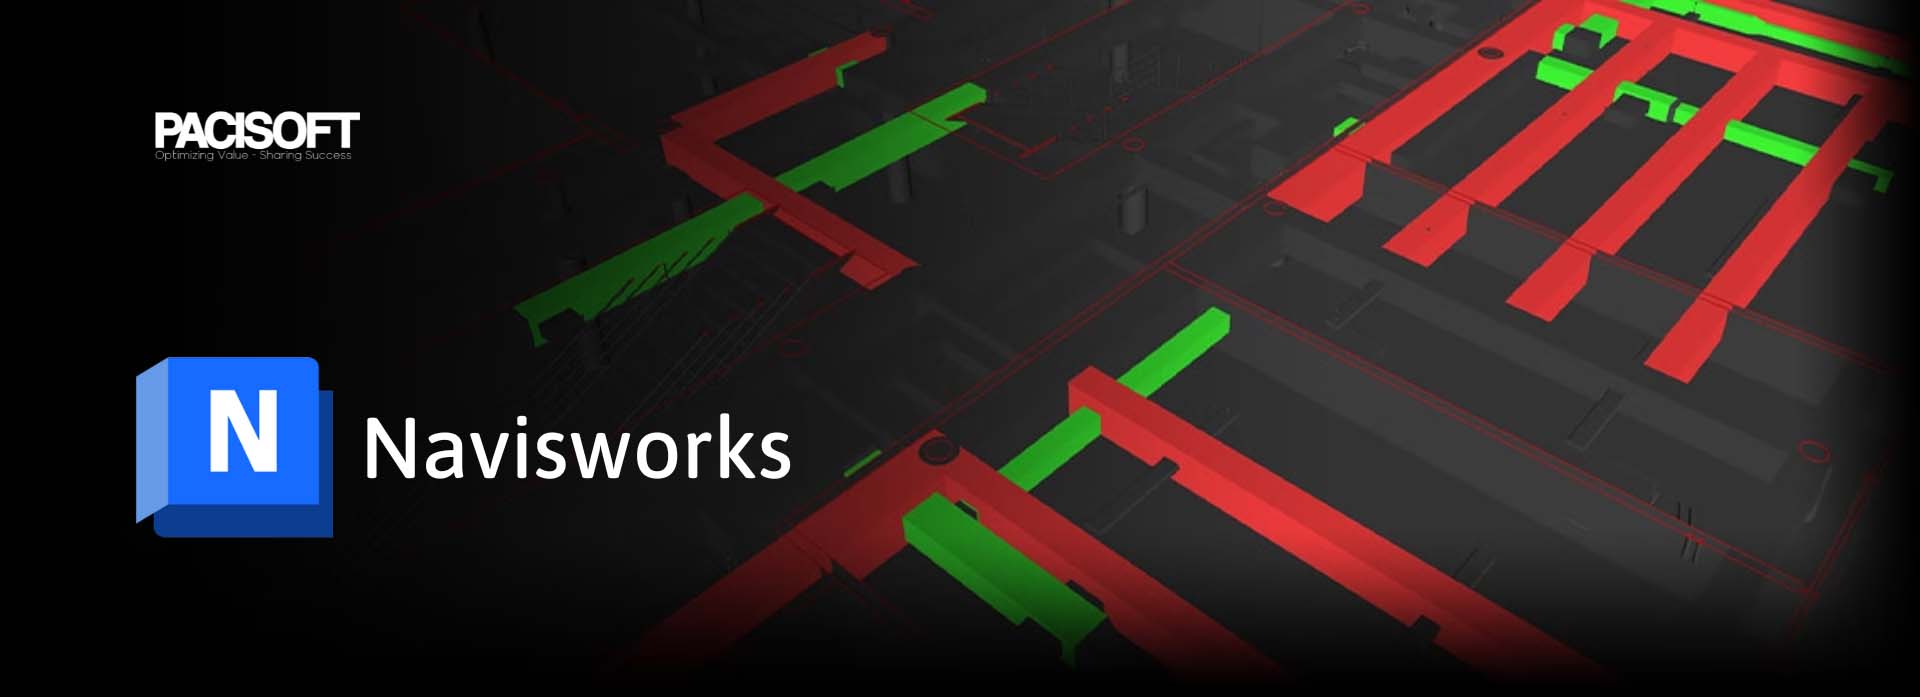 Autodesk Navisworks | Phần mềm đánh giá mô hình 3D, phối hợp và phát hiện xung đột